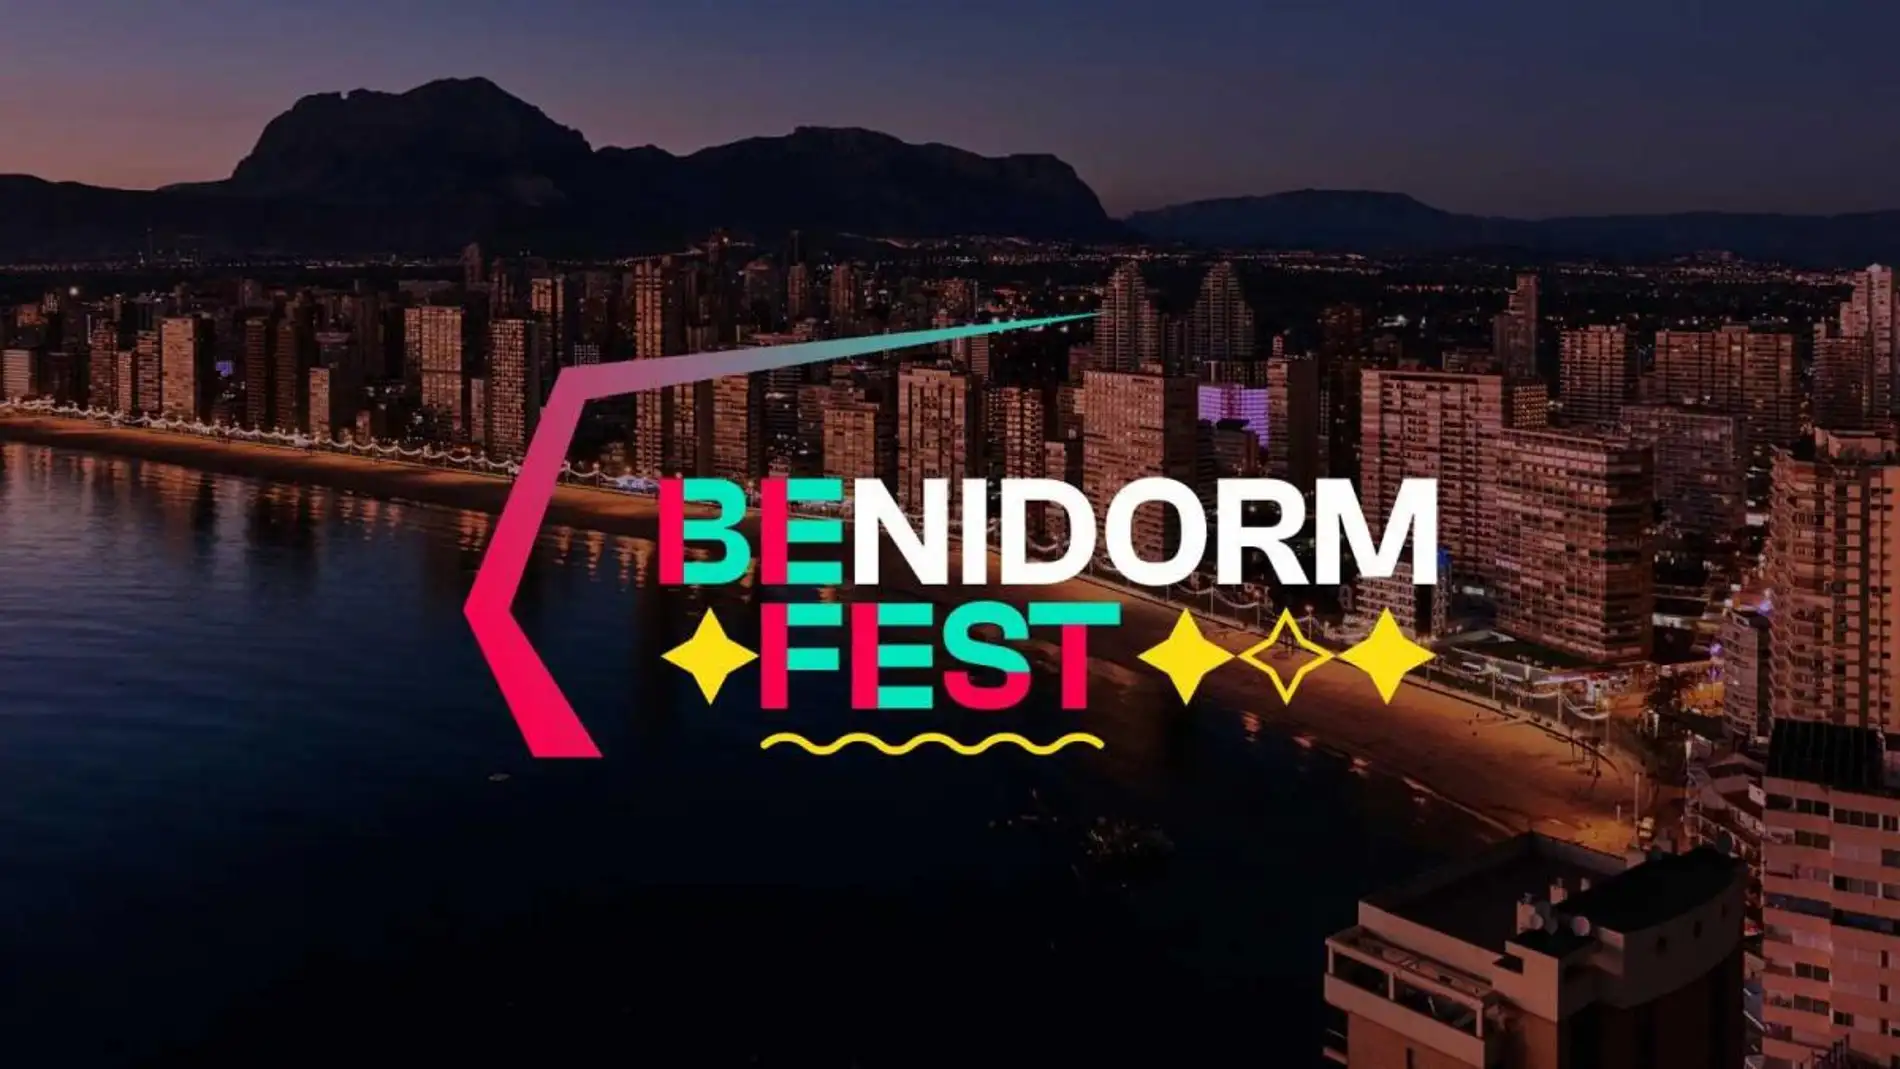 El Benidorm Fest reúne a los candidatos a representar a España en Eurovisión con el lema 'El festival que quieres'